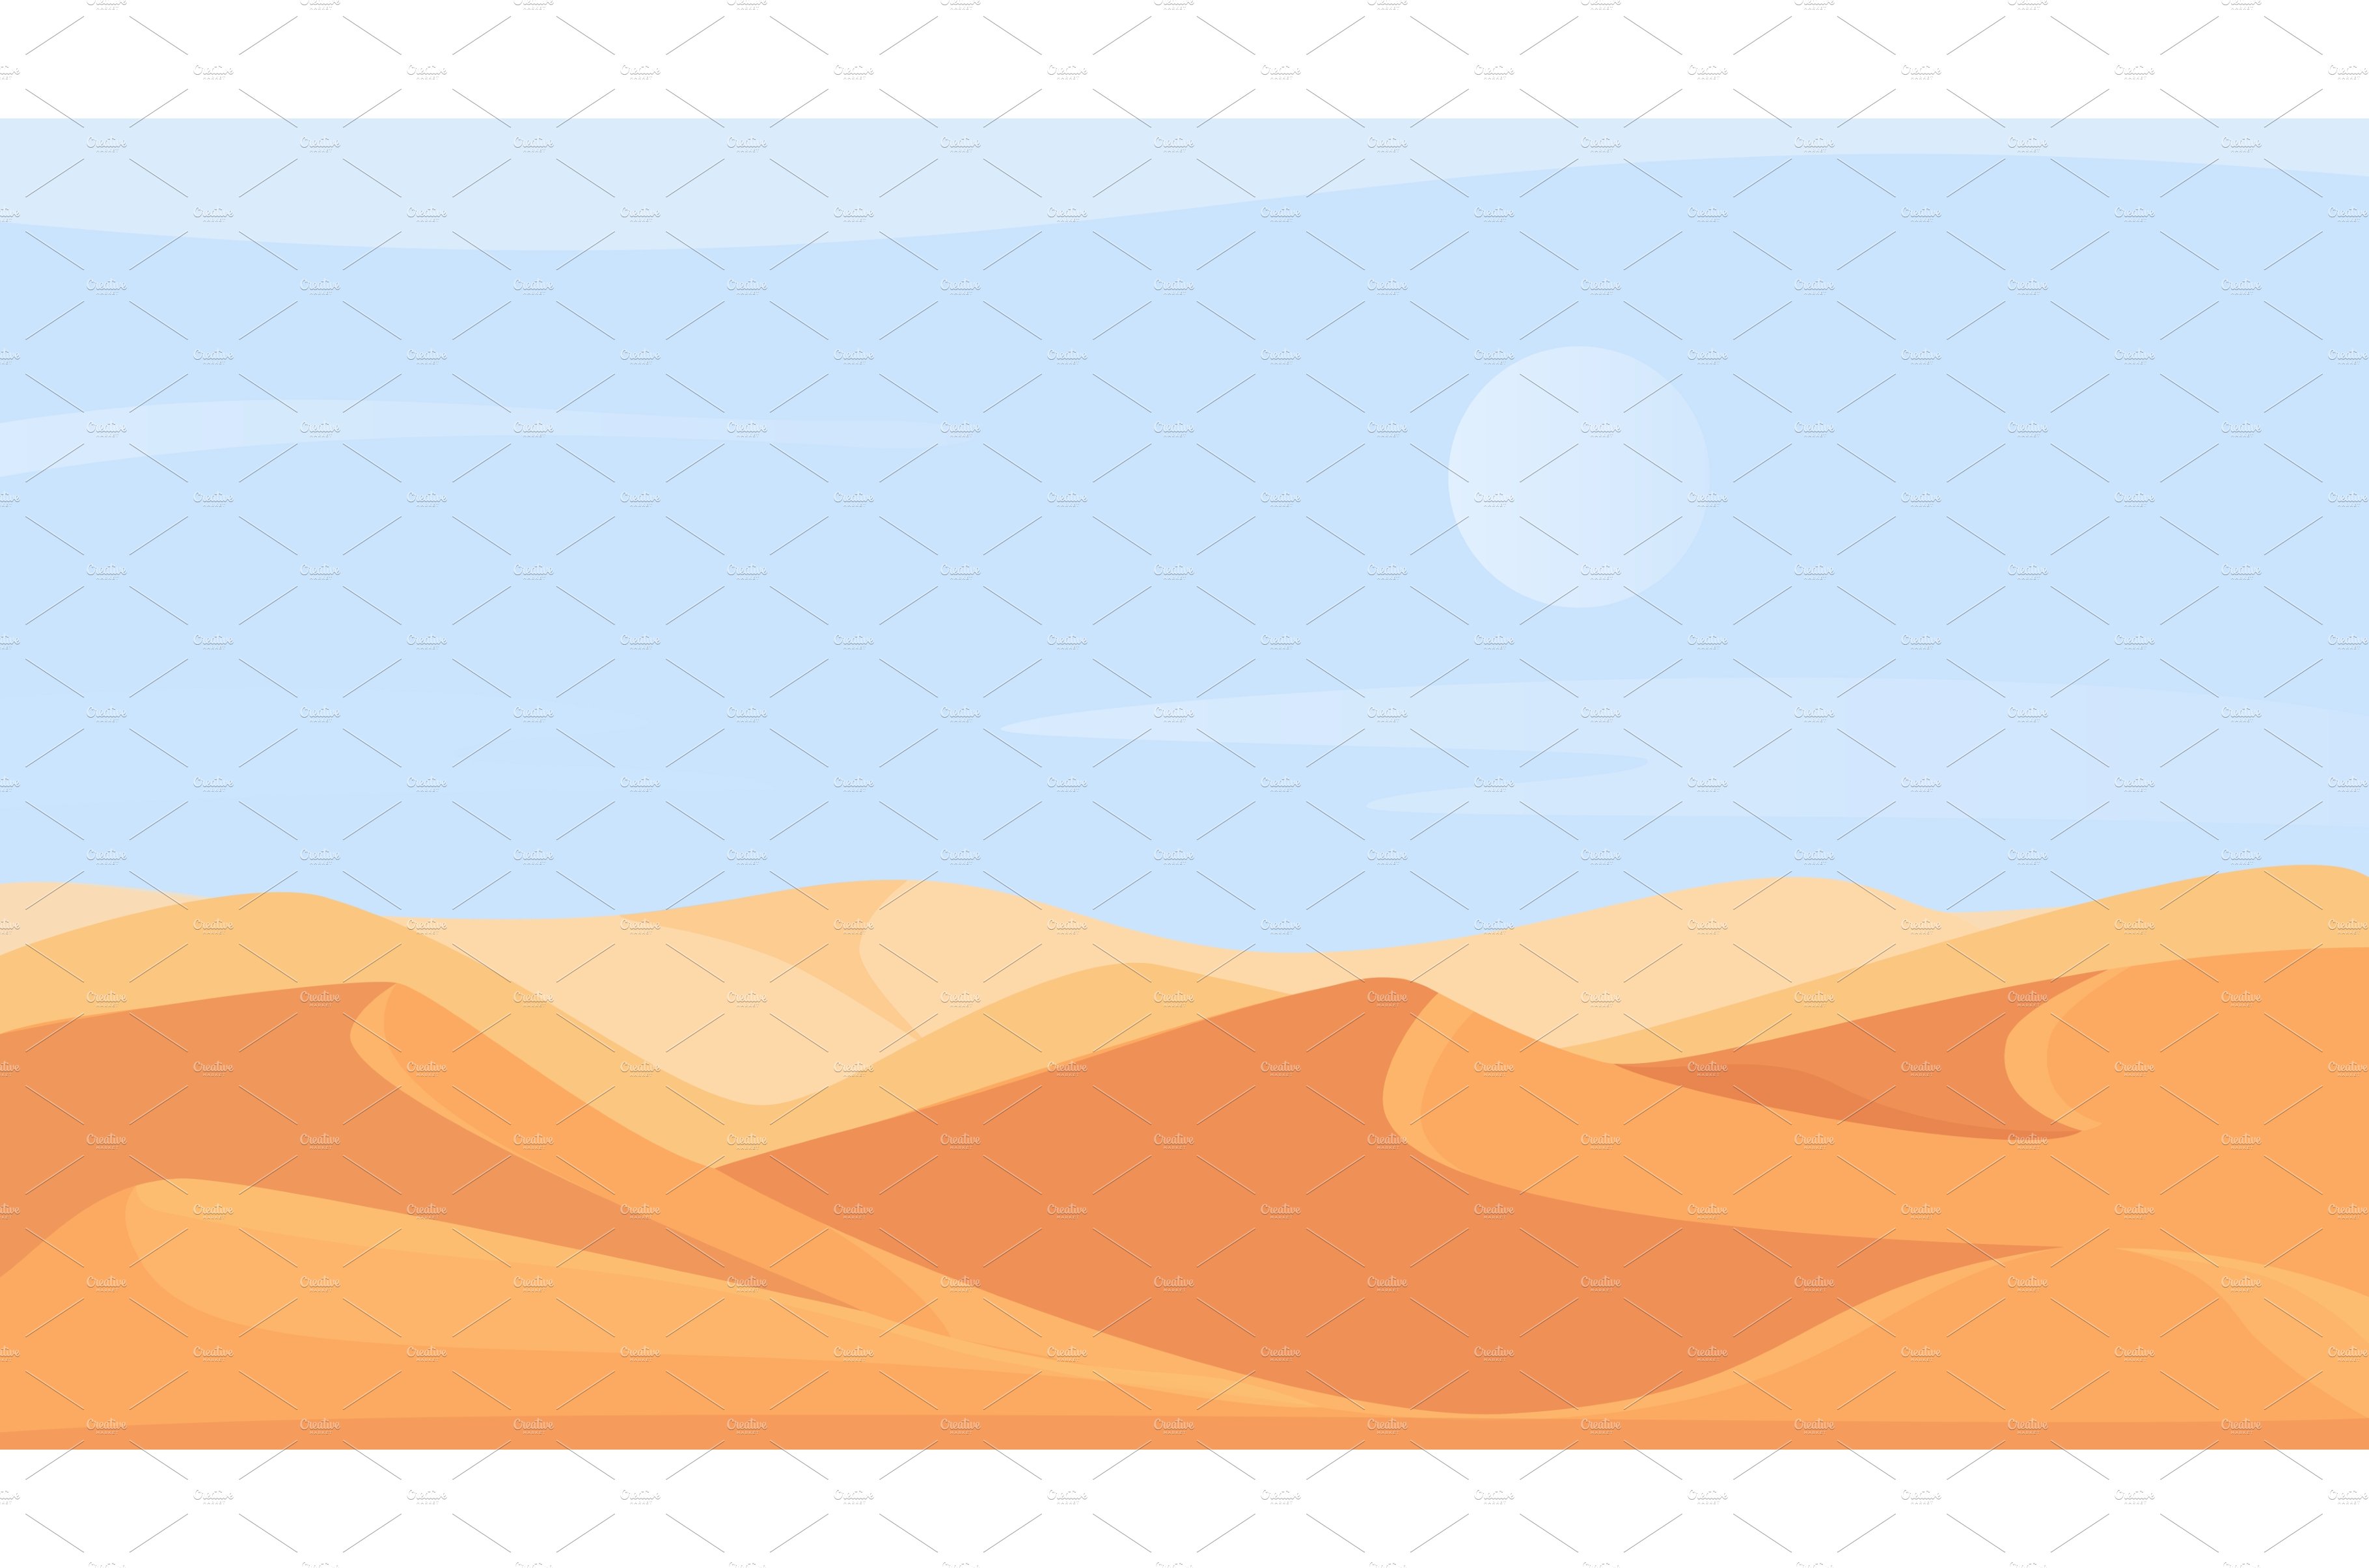 Egyptian sand desert landscape cover image.